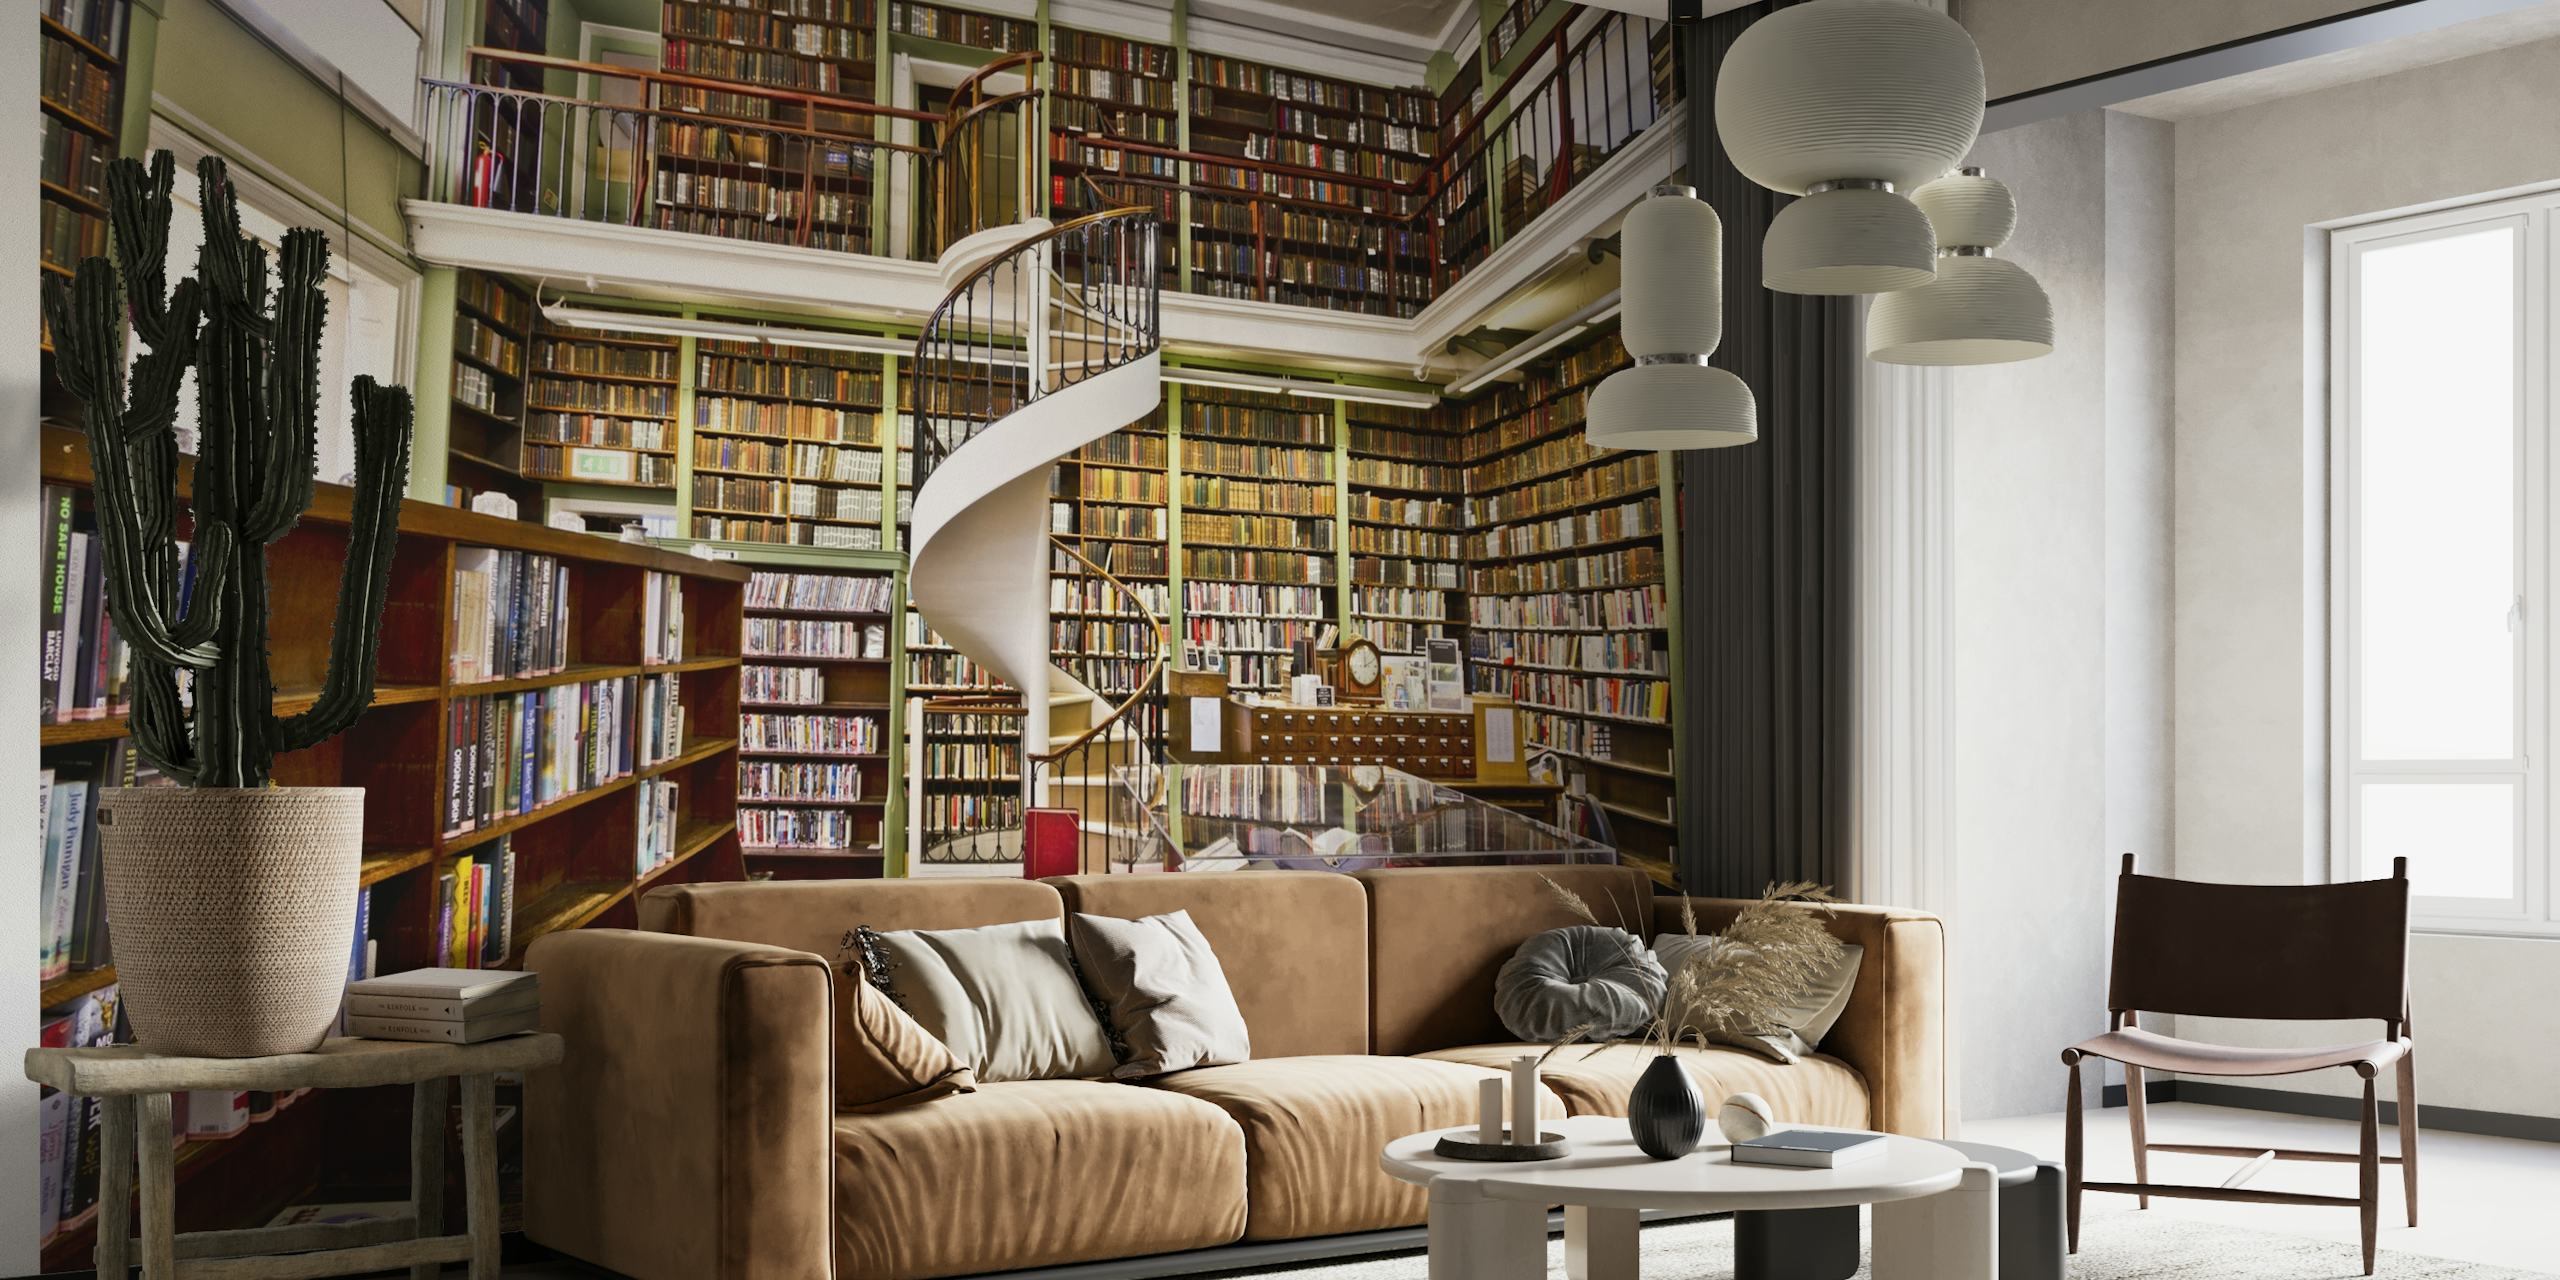 Vægmaleri af et hyggeligt bibliotek med bogreoler og en vindeltrappe